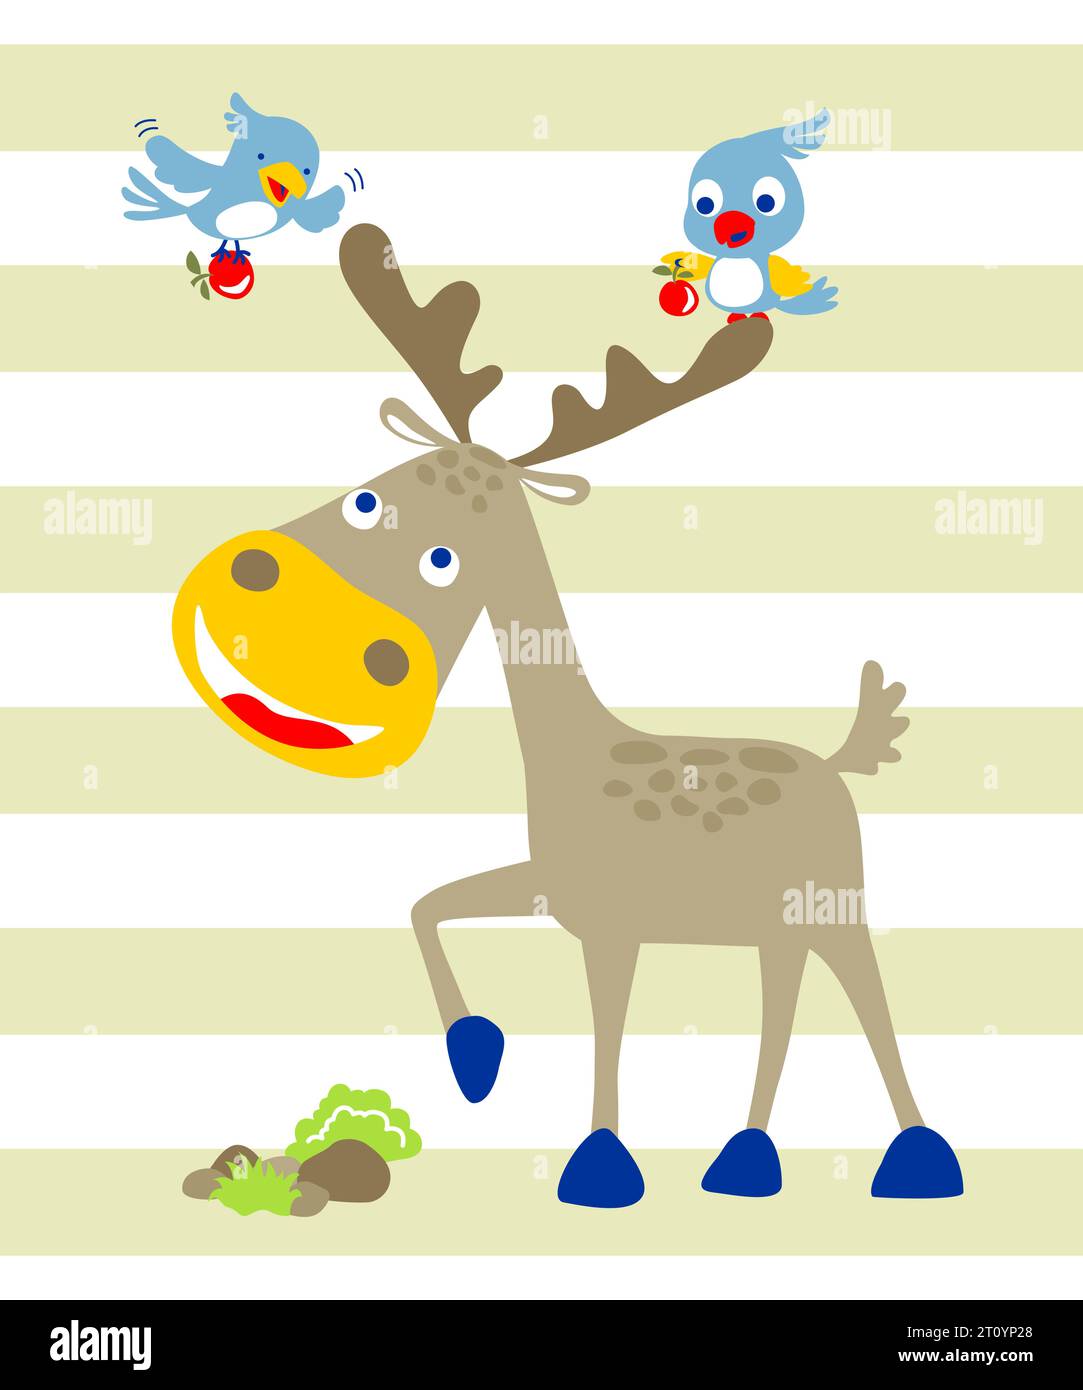 Vector illustration of cartoon deer with birds carrying fruit Stock Vector